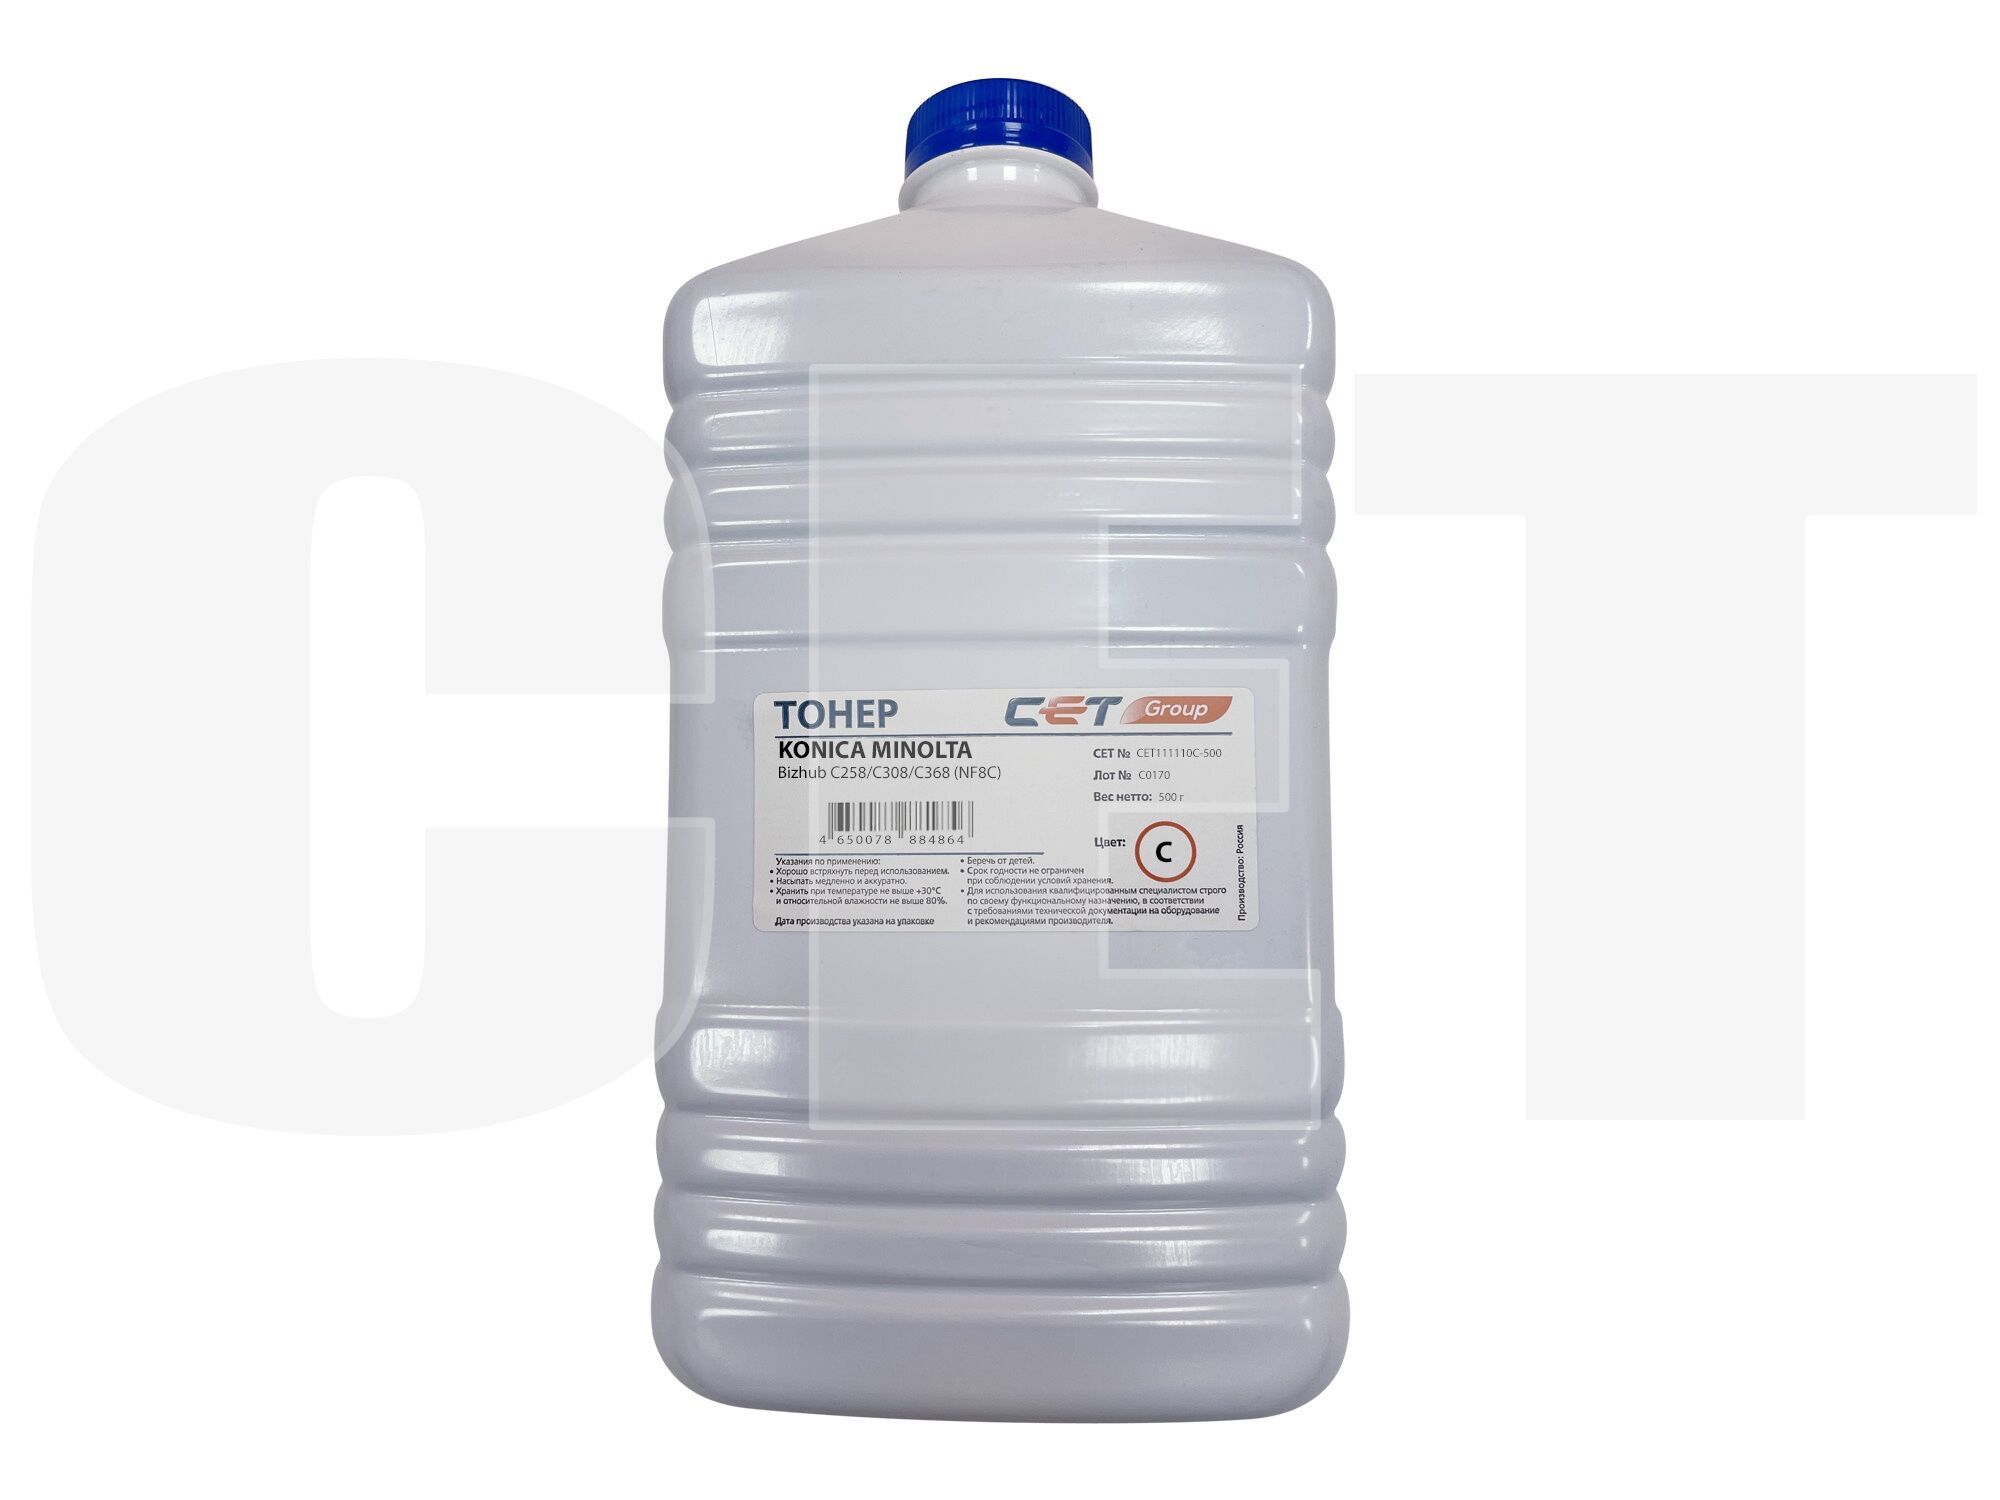 Тонер CET NF8C TN-324, бутыль 500 г, синий, совместимый для Konica Minolta Bizhub C258/C308/C368 (CET111110C-500)